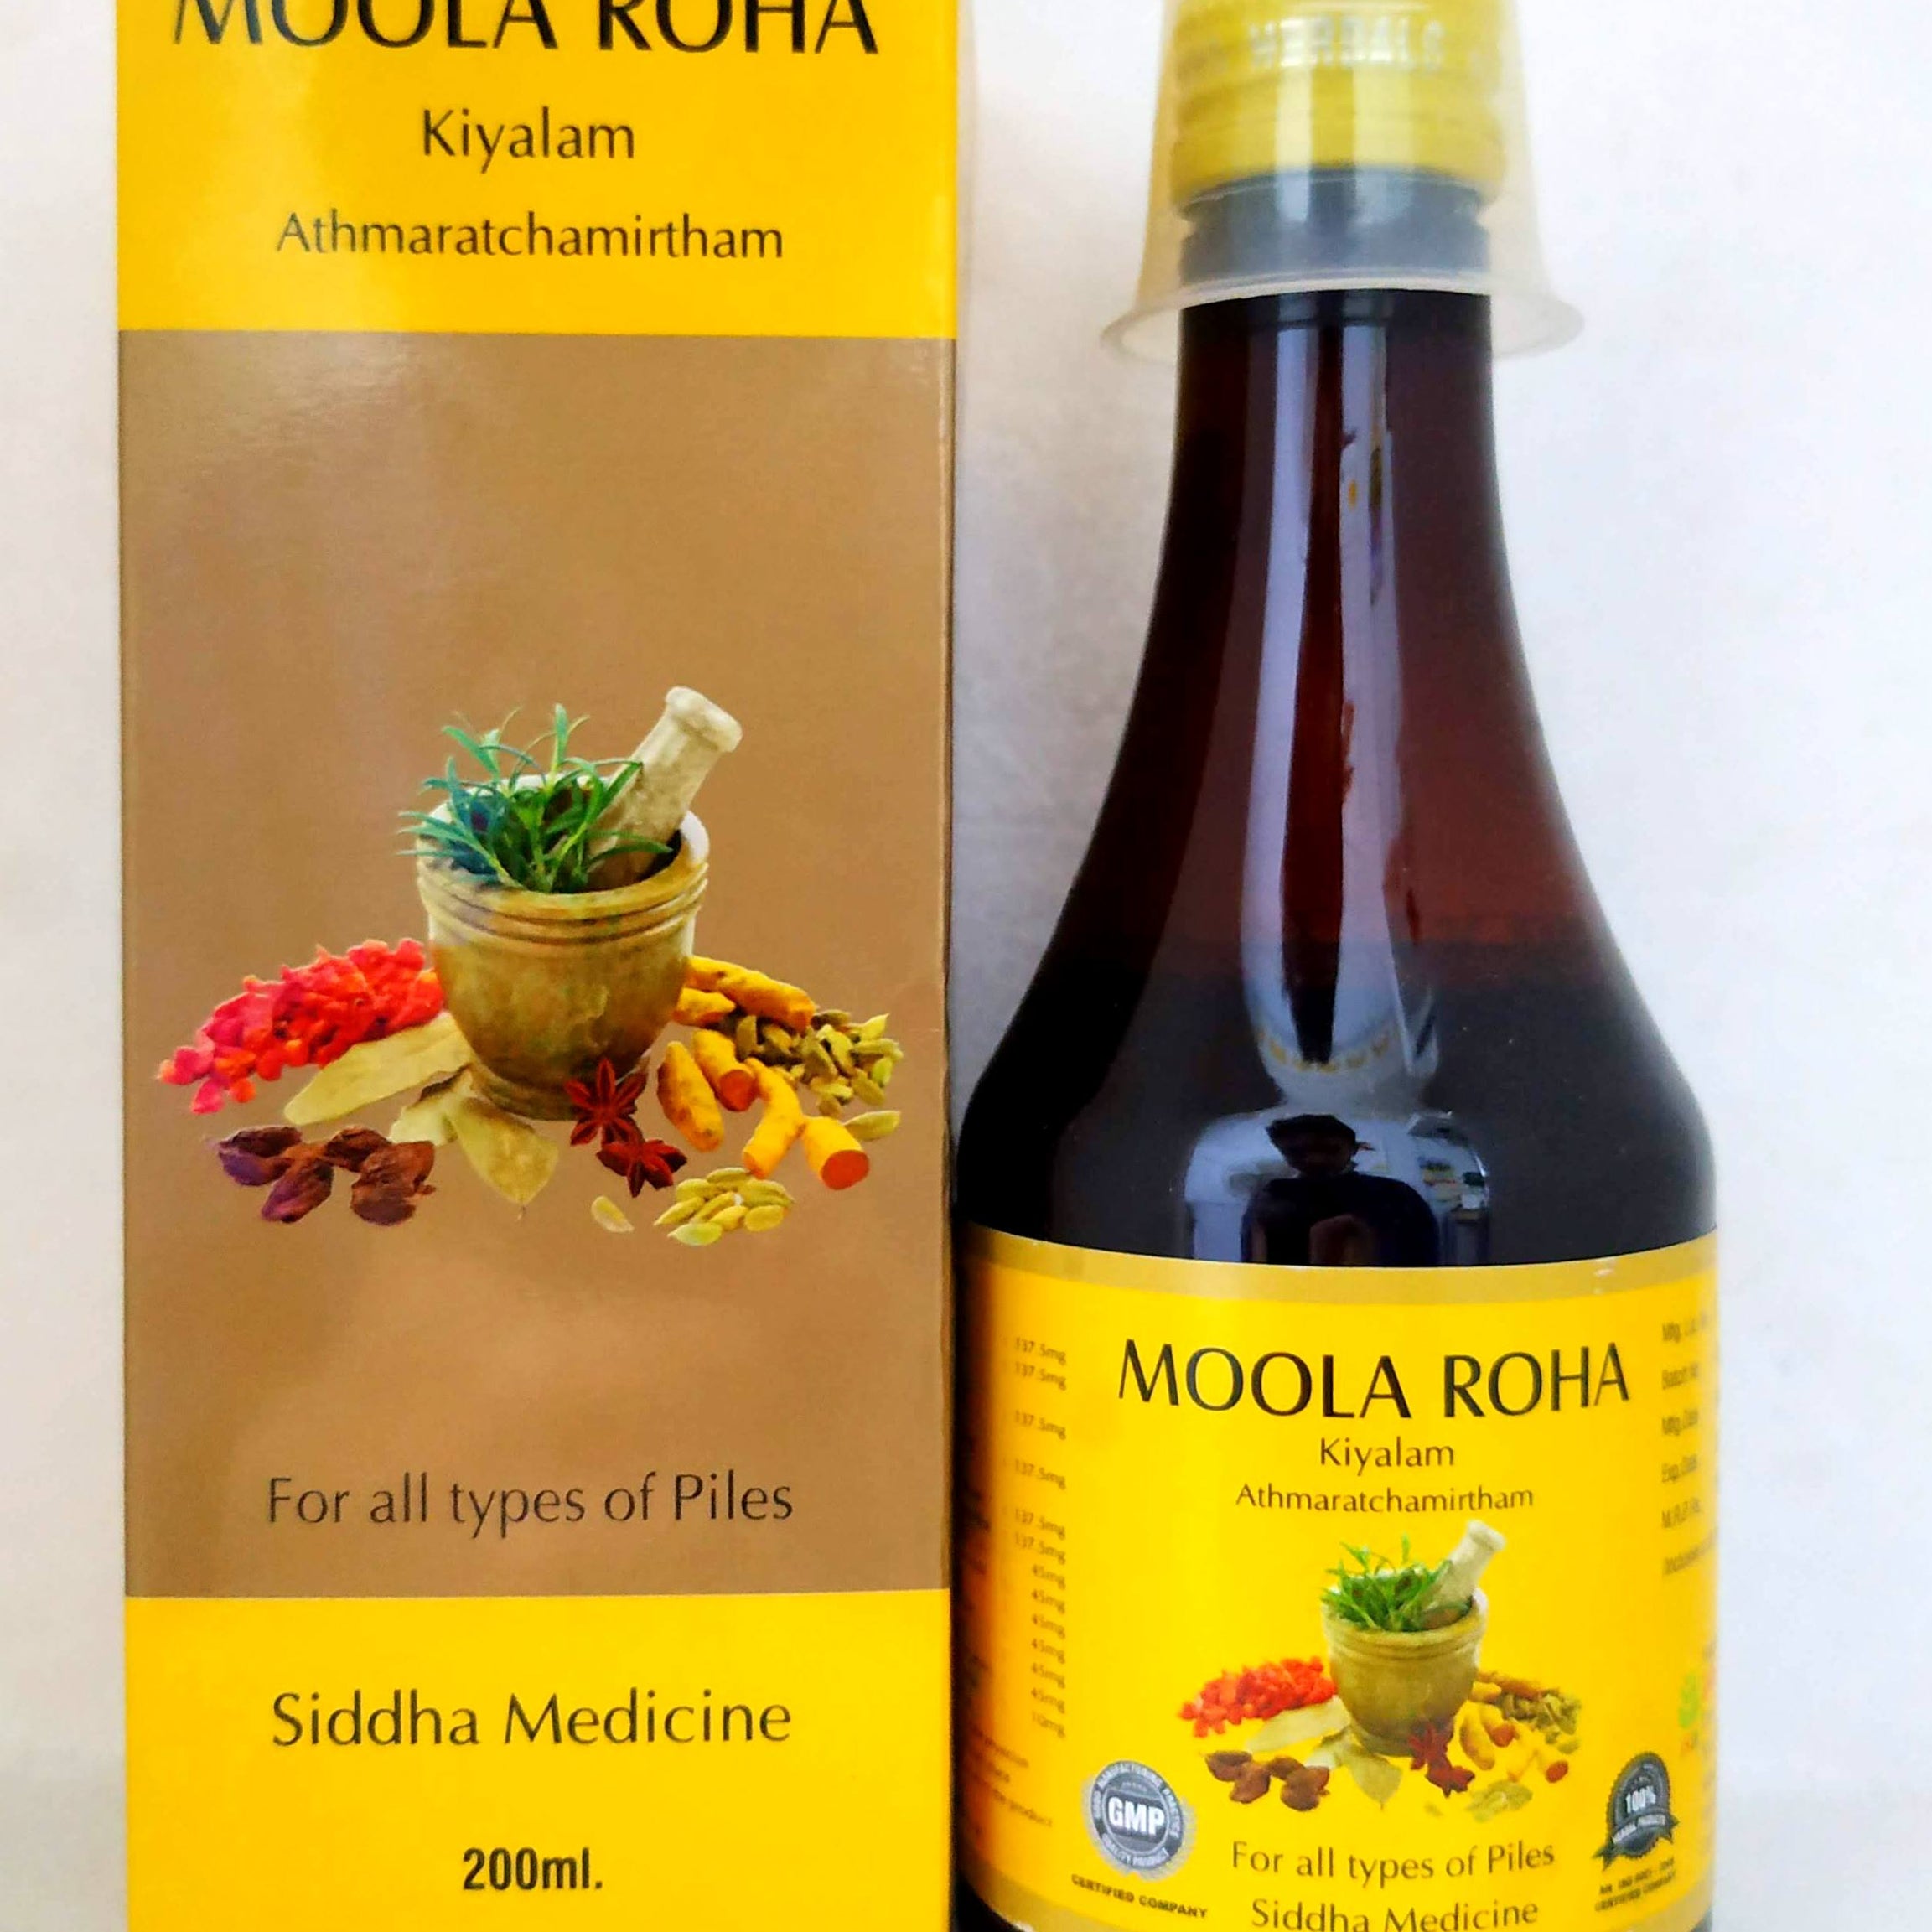 Shop Moola roha kiyalam 200ml at price 156.00 from Jaisurya Herbals Online - Ayush Care